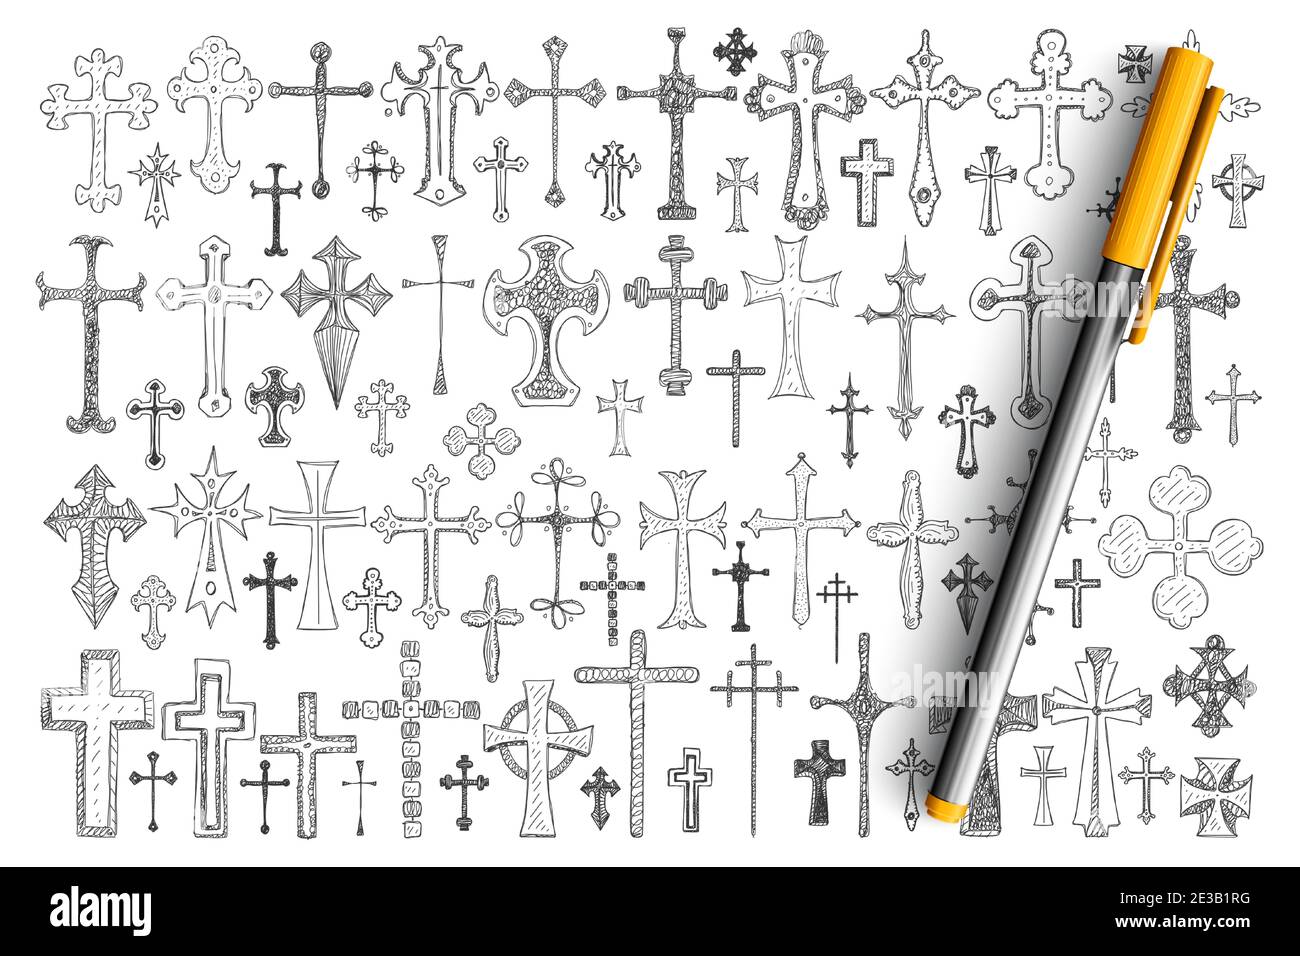 Verschiedene religiöse Kreuze Doodle Set. Sammlung von handgezeichneten Kreuzen in verschiedenen Größen und Stilen als Symbol des religiösen Glaubens, Christentum isoliert auf transparentem Hintergrund Stock Vektor